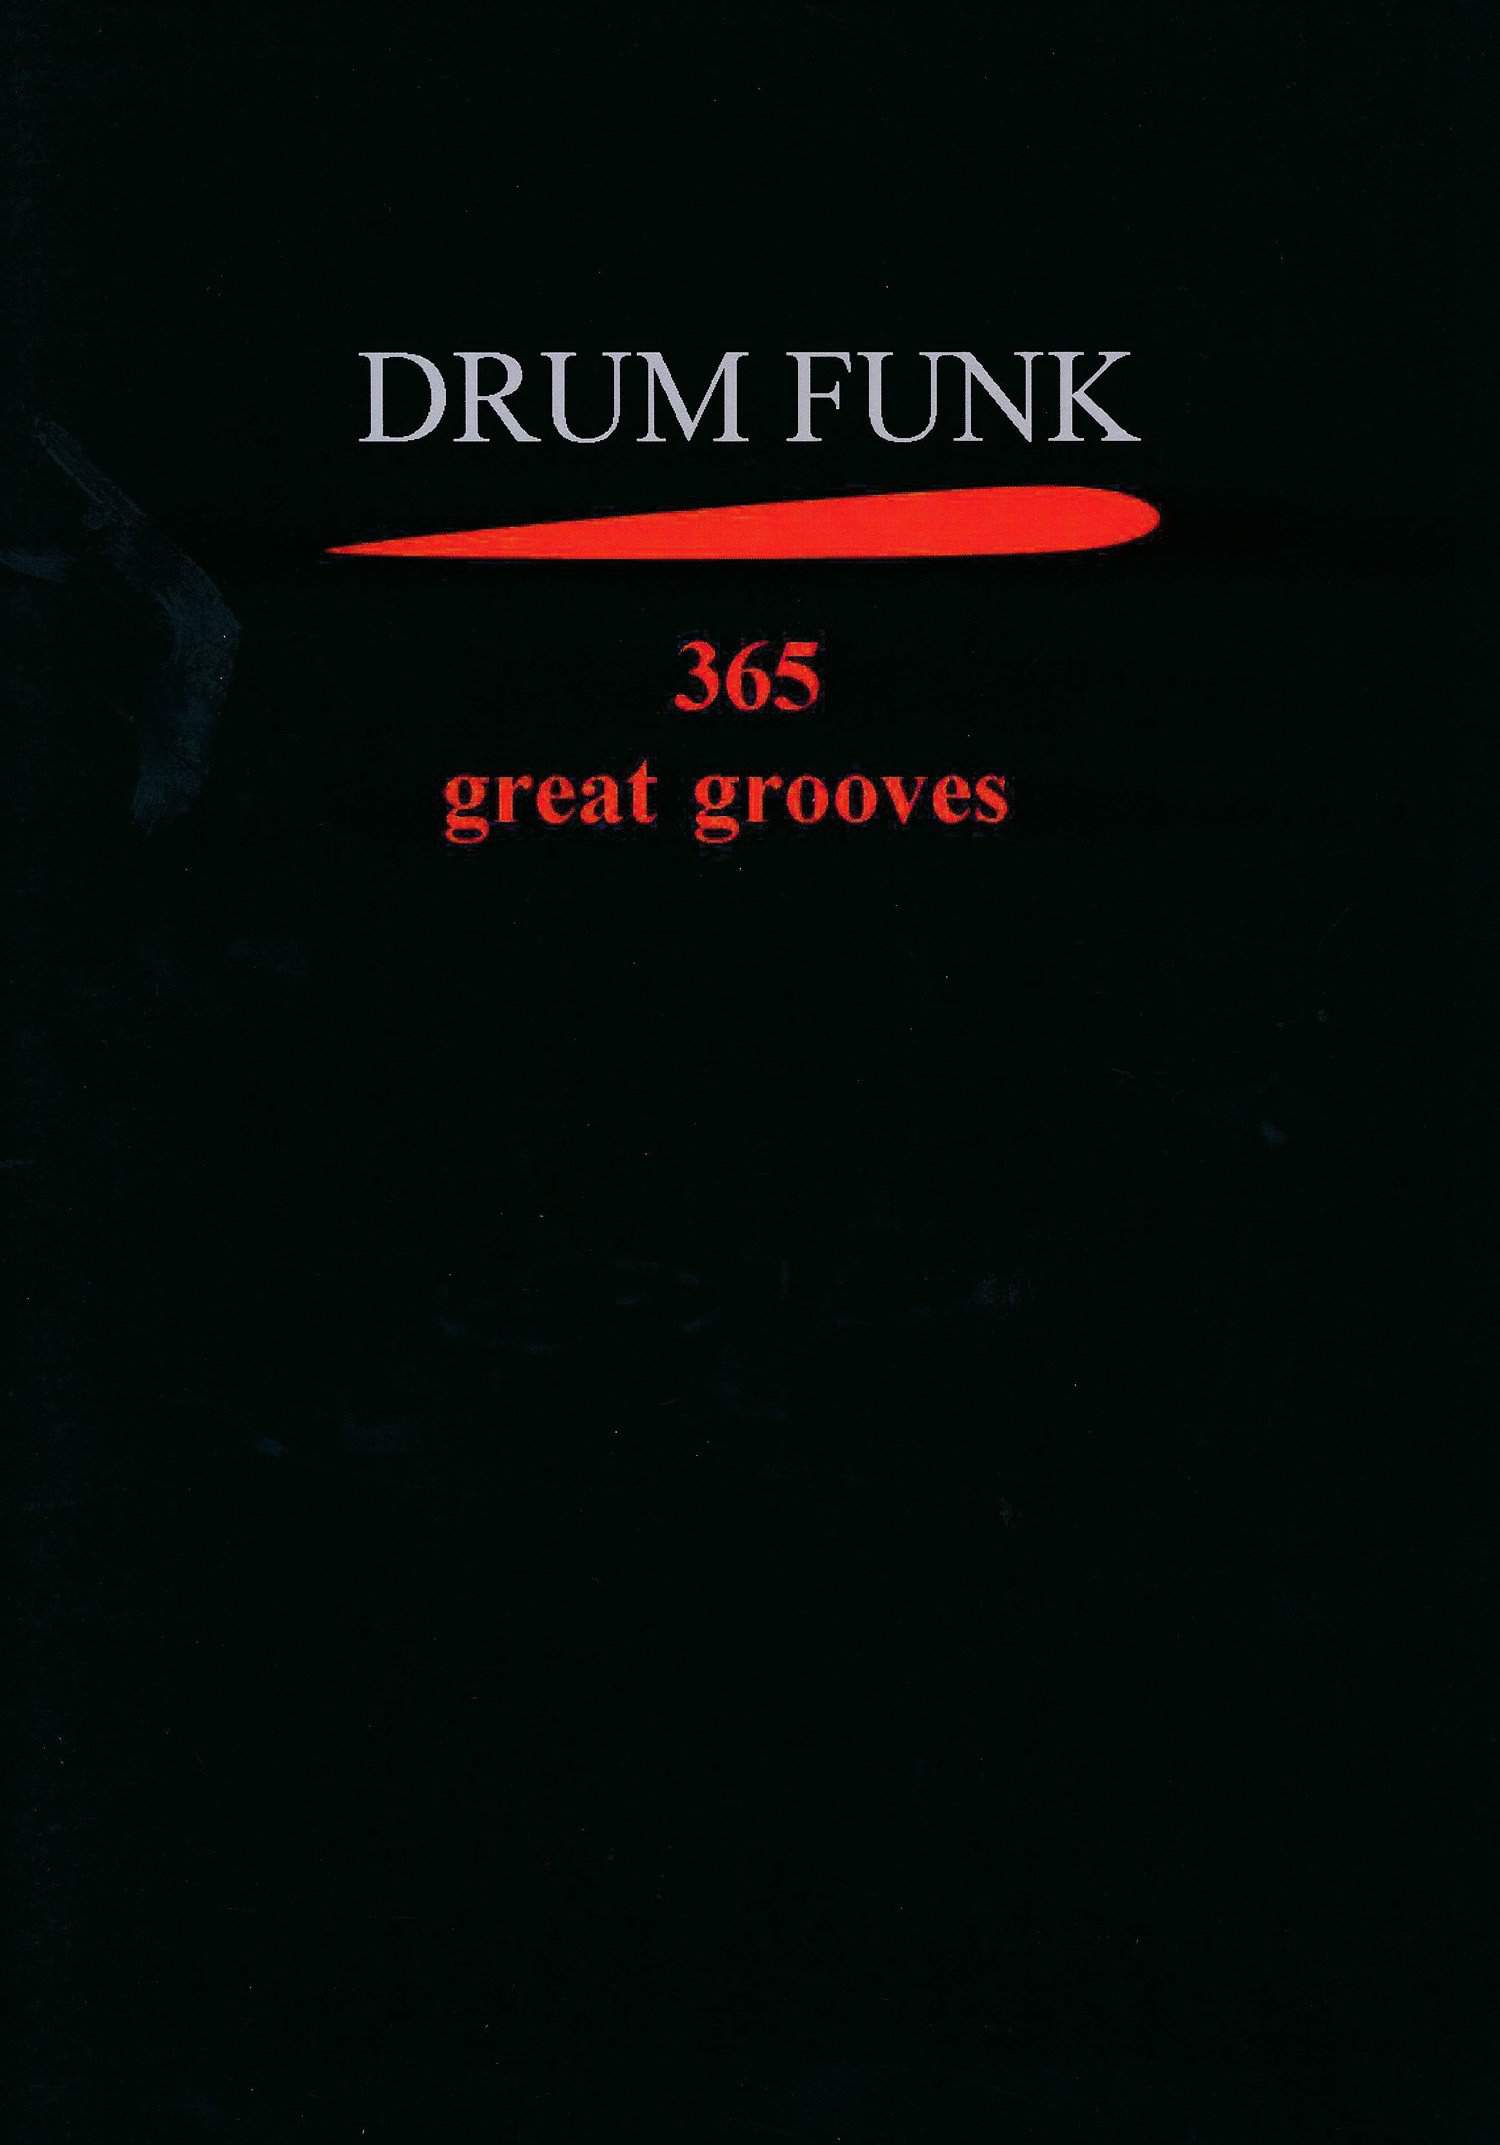 Drum Funk - 365 great grooves